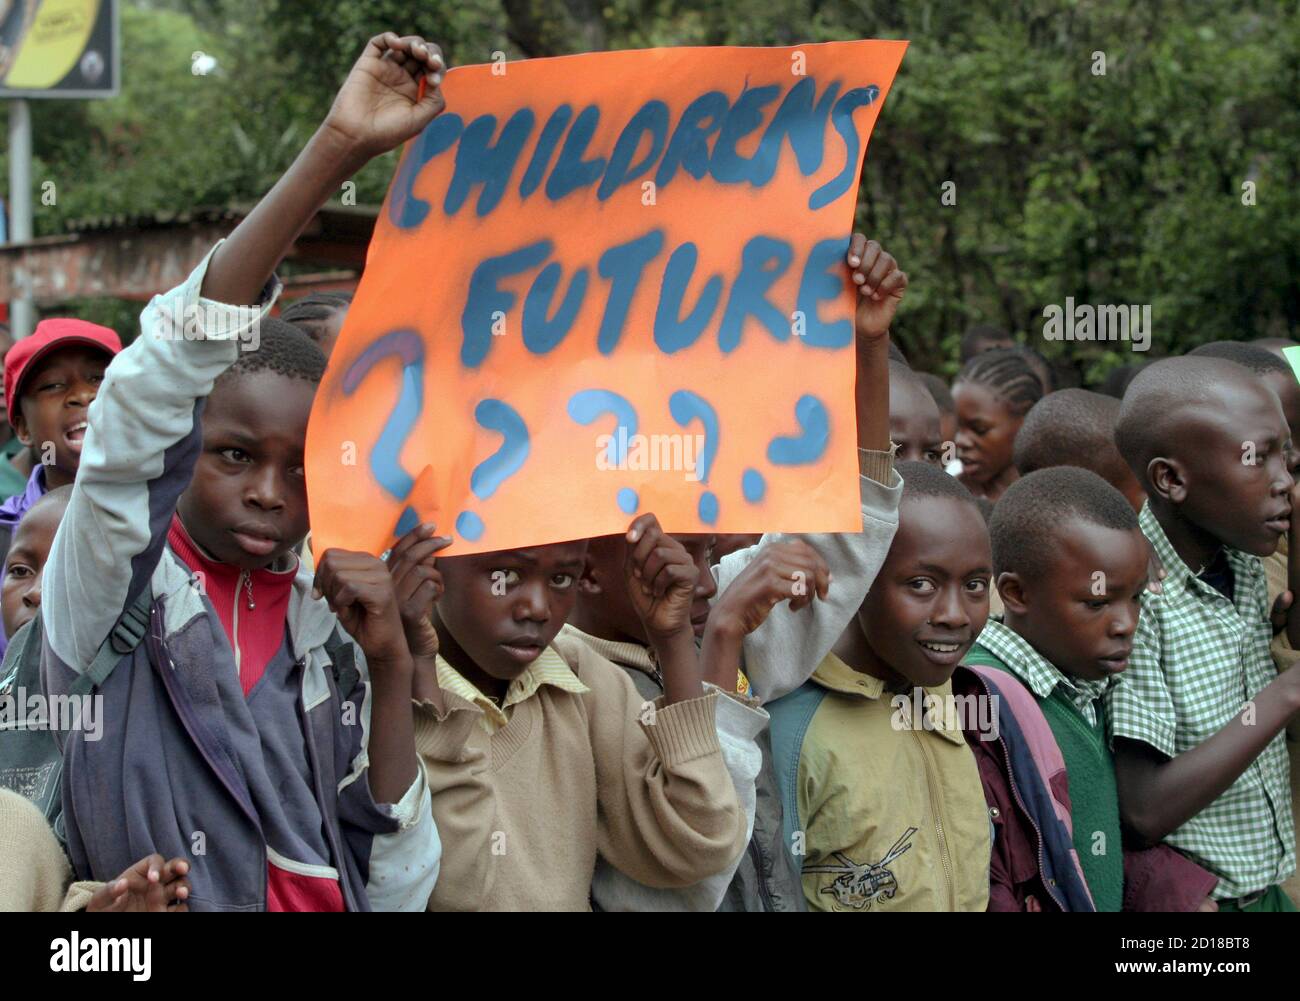 Les enfants kenyans participent à une procession organisée par la campagne sur les changements climatiques - Afrique et le Groupe œcuménique dans le cadre de la Conférence des Nations Unies sur les changements climatiques qui se tient à Gigiri, Nairobi, le 11 novembre 2006. Samedi, des centaines de personnes ont défilé dans la capitale pour appeler les pays riches à faire plus dans la lutte contre le réchauffement climatique. REUTERS/Thomas Mukoya (KENYA) Banque D'Images